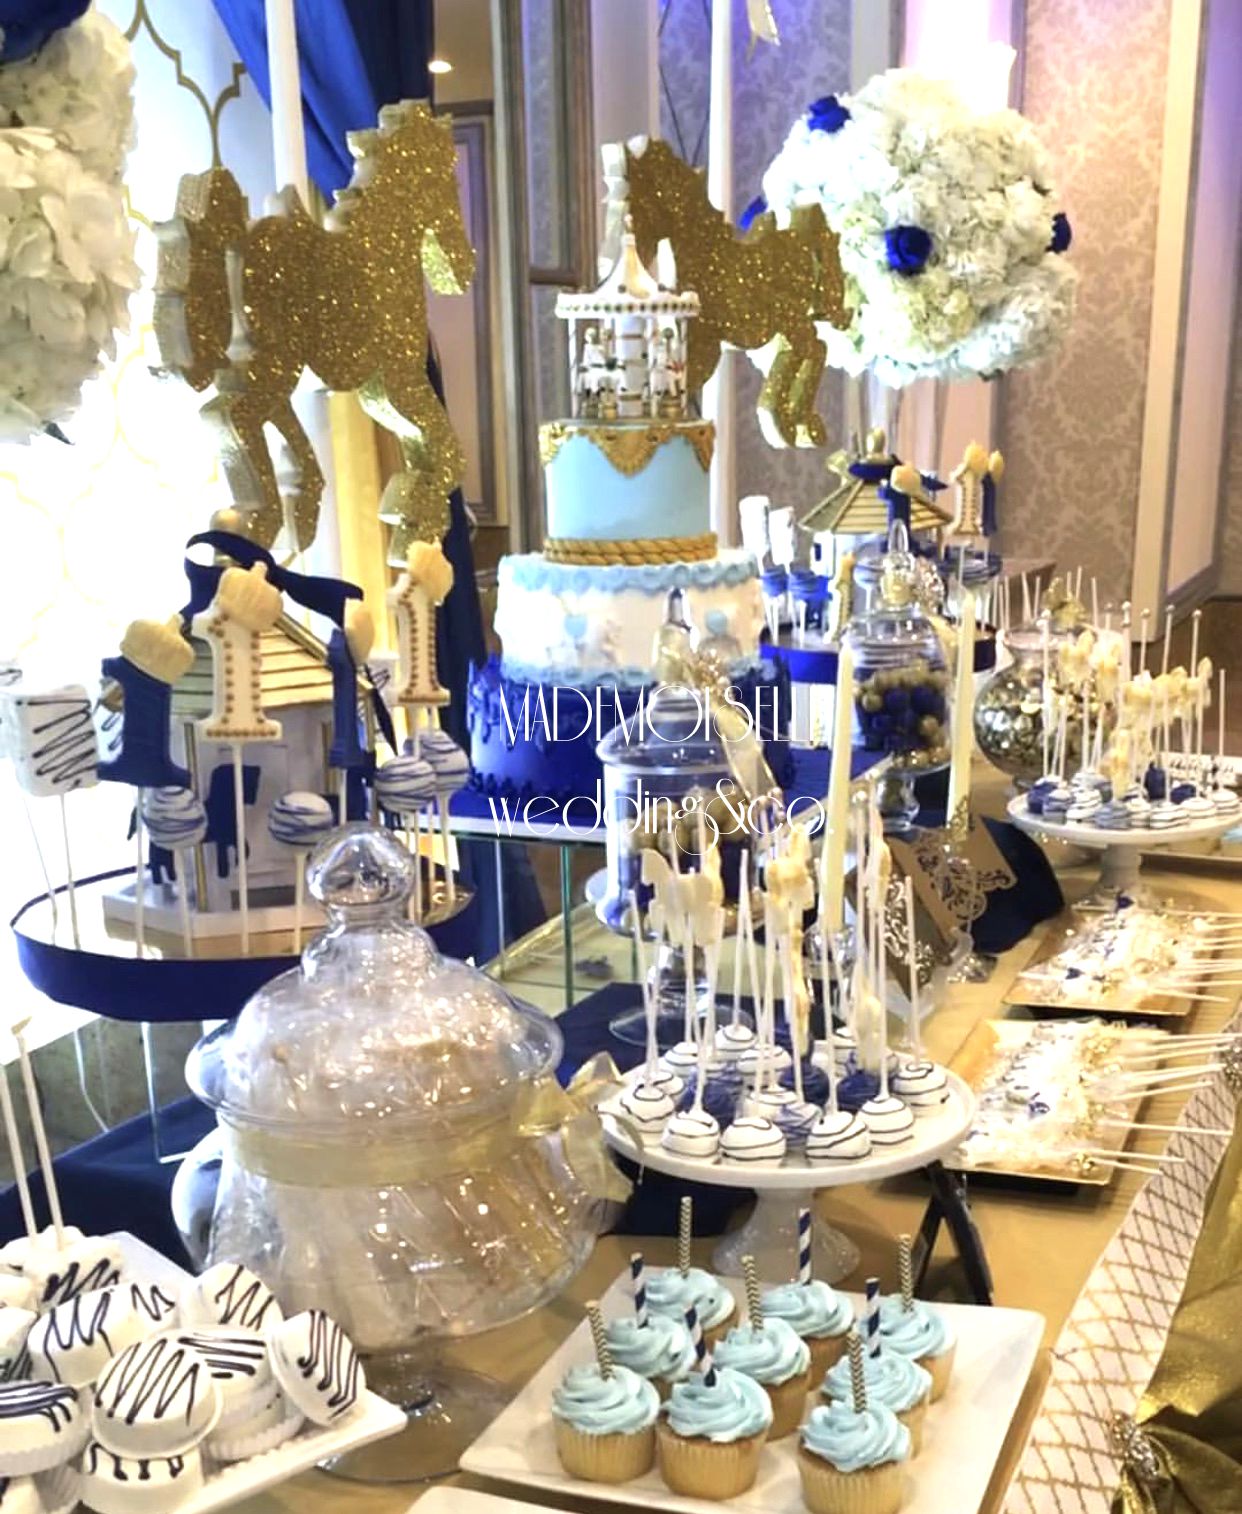 IMG_E4544-slatki sto-dekoracija rodjendana-konjici-cupecakes-dekoracija za krstenje-kolacici-plavo zlatna dekoracija slatkog stola